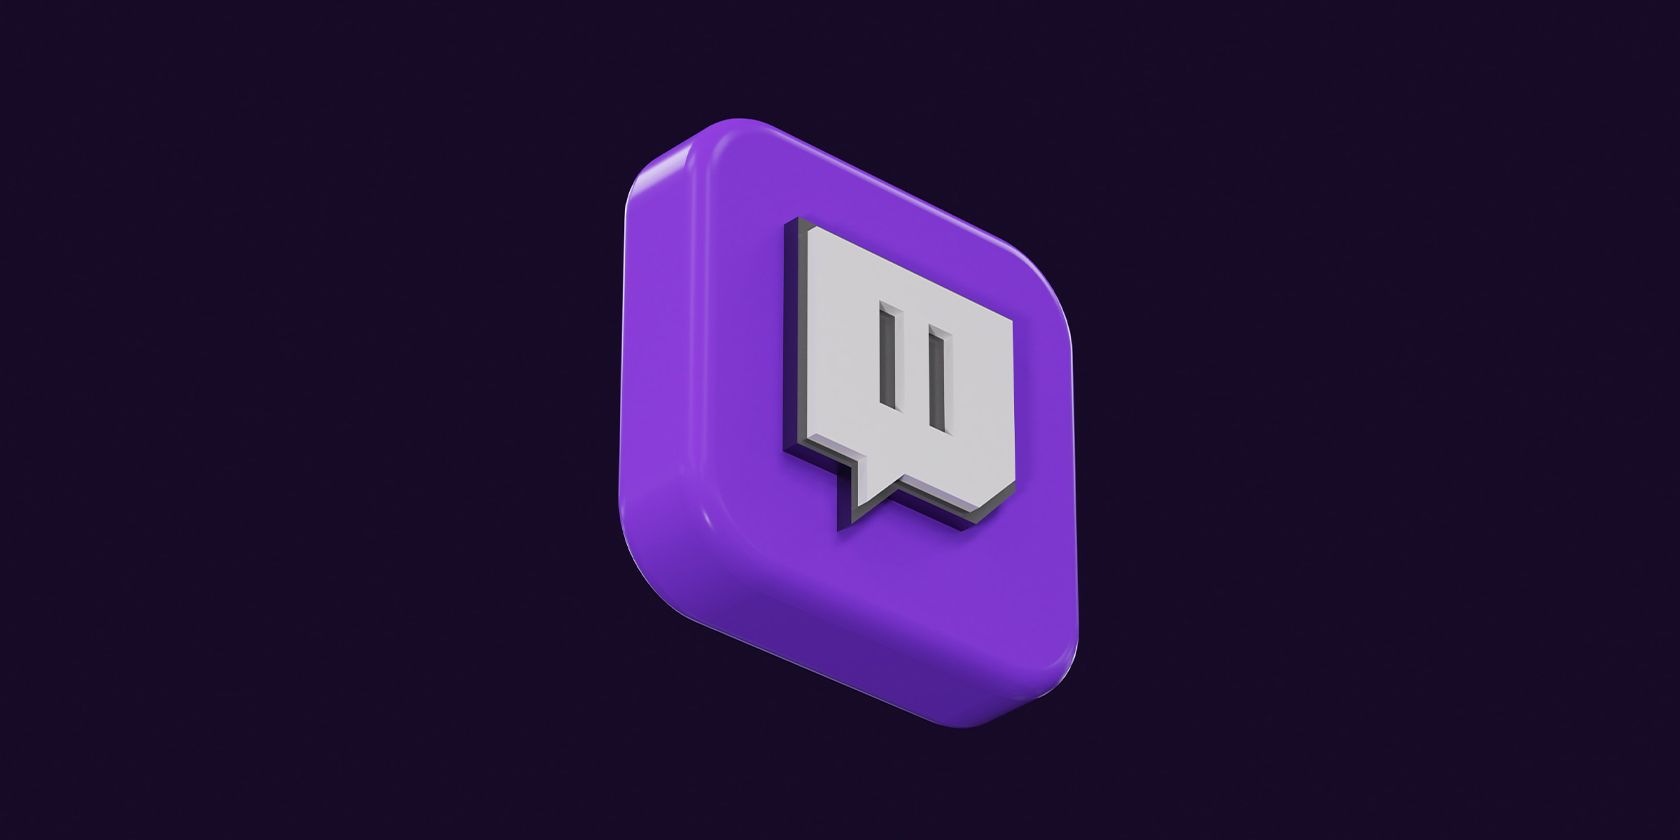 3D art of twitch logo